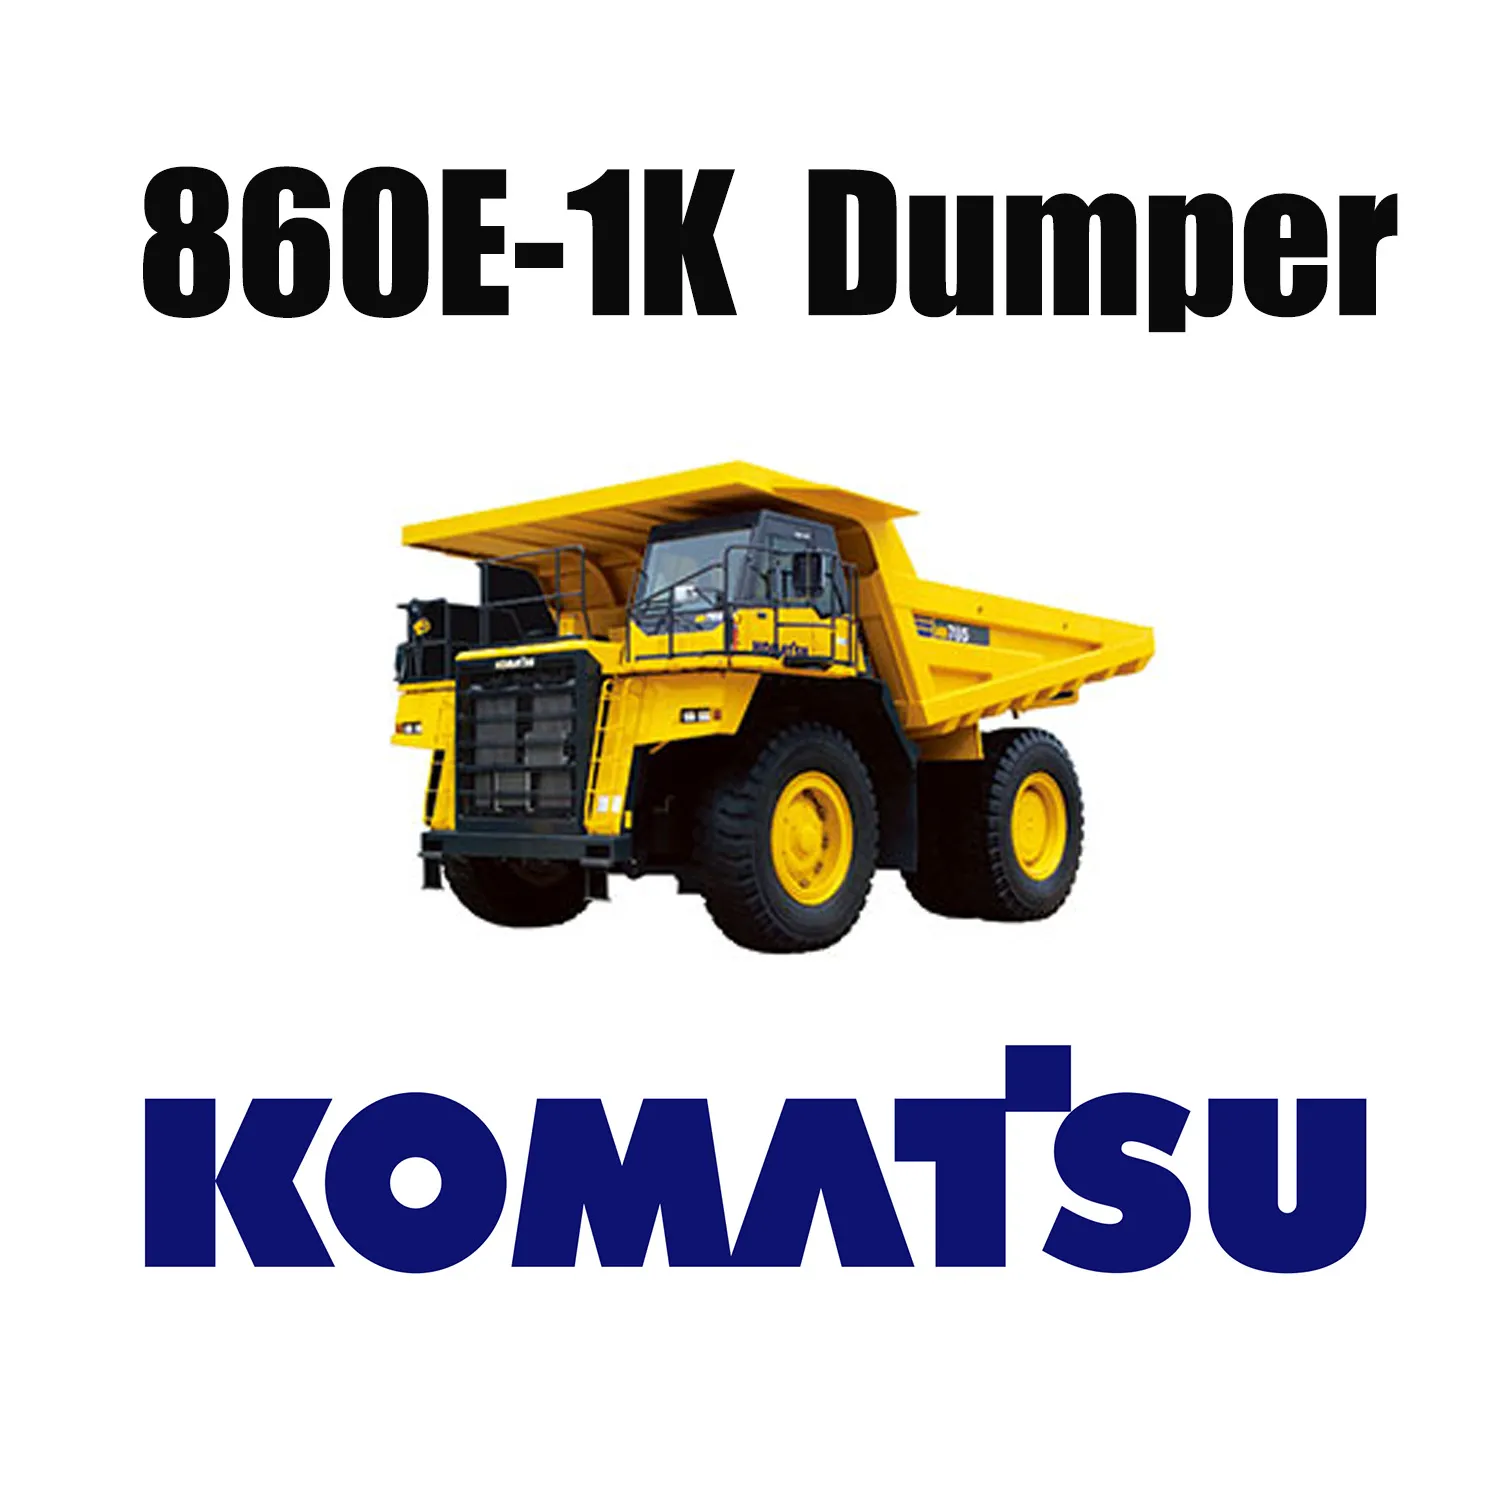 Giant 50/80R57 Off the Road Шины, используемые на угольной шахте для KOMATSU 860E-1K